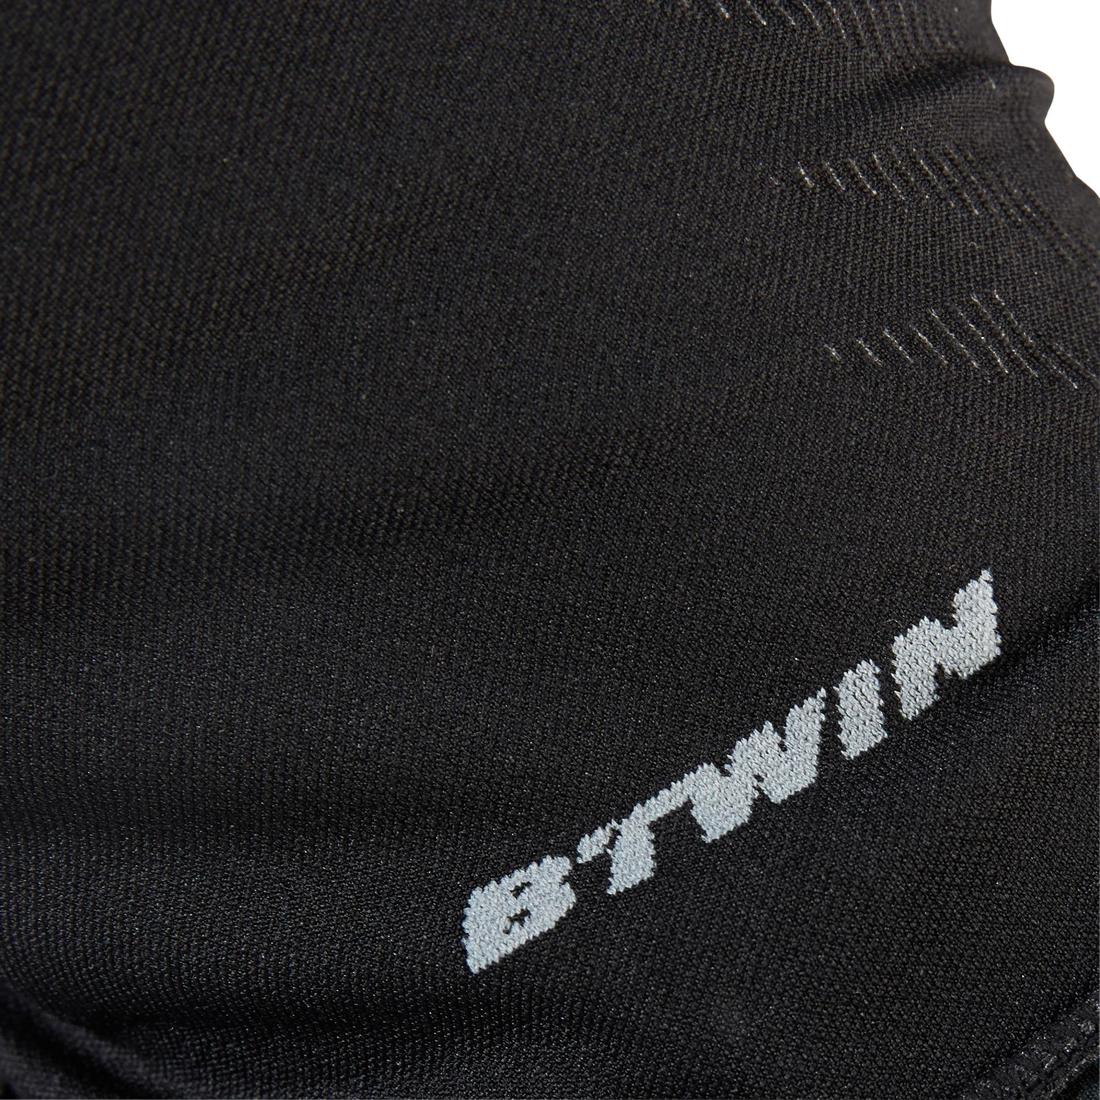 B'TWIN(ビトウィン) サイクリング バラクラバ シームレス 500